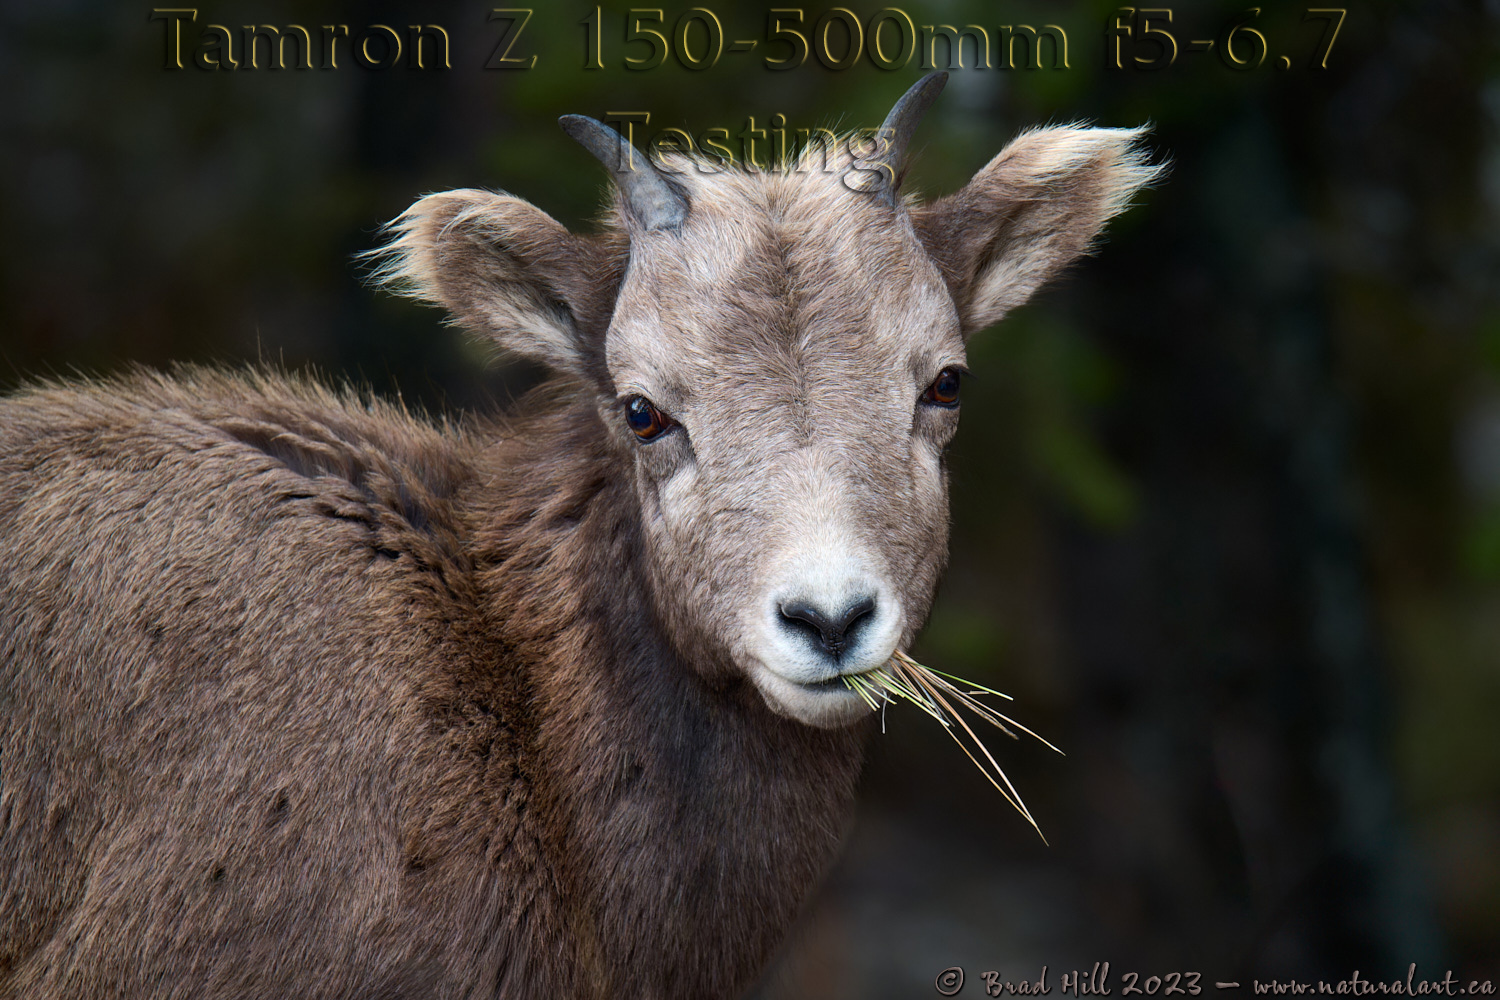 Munching - Young Bighorn Ram